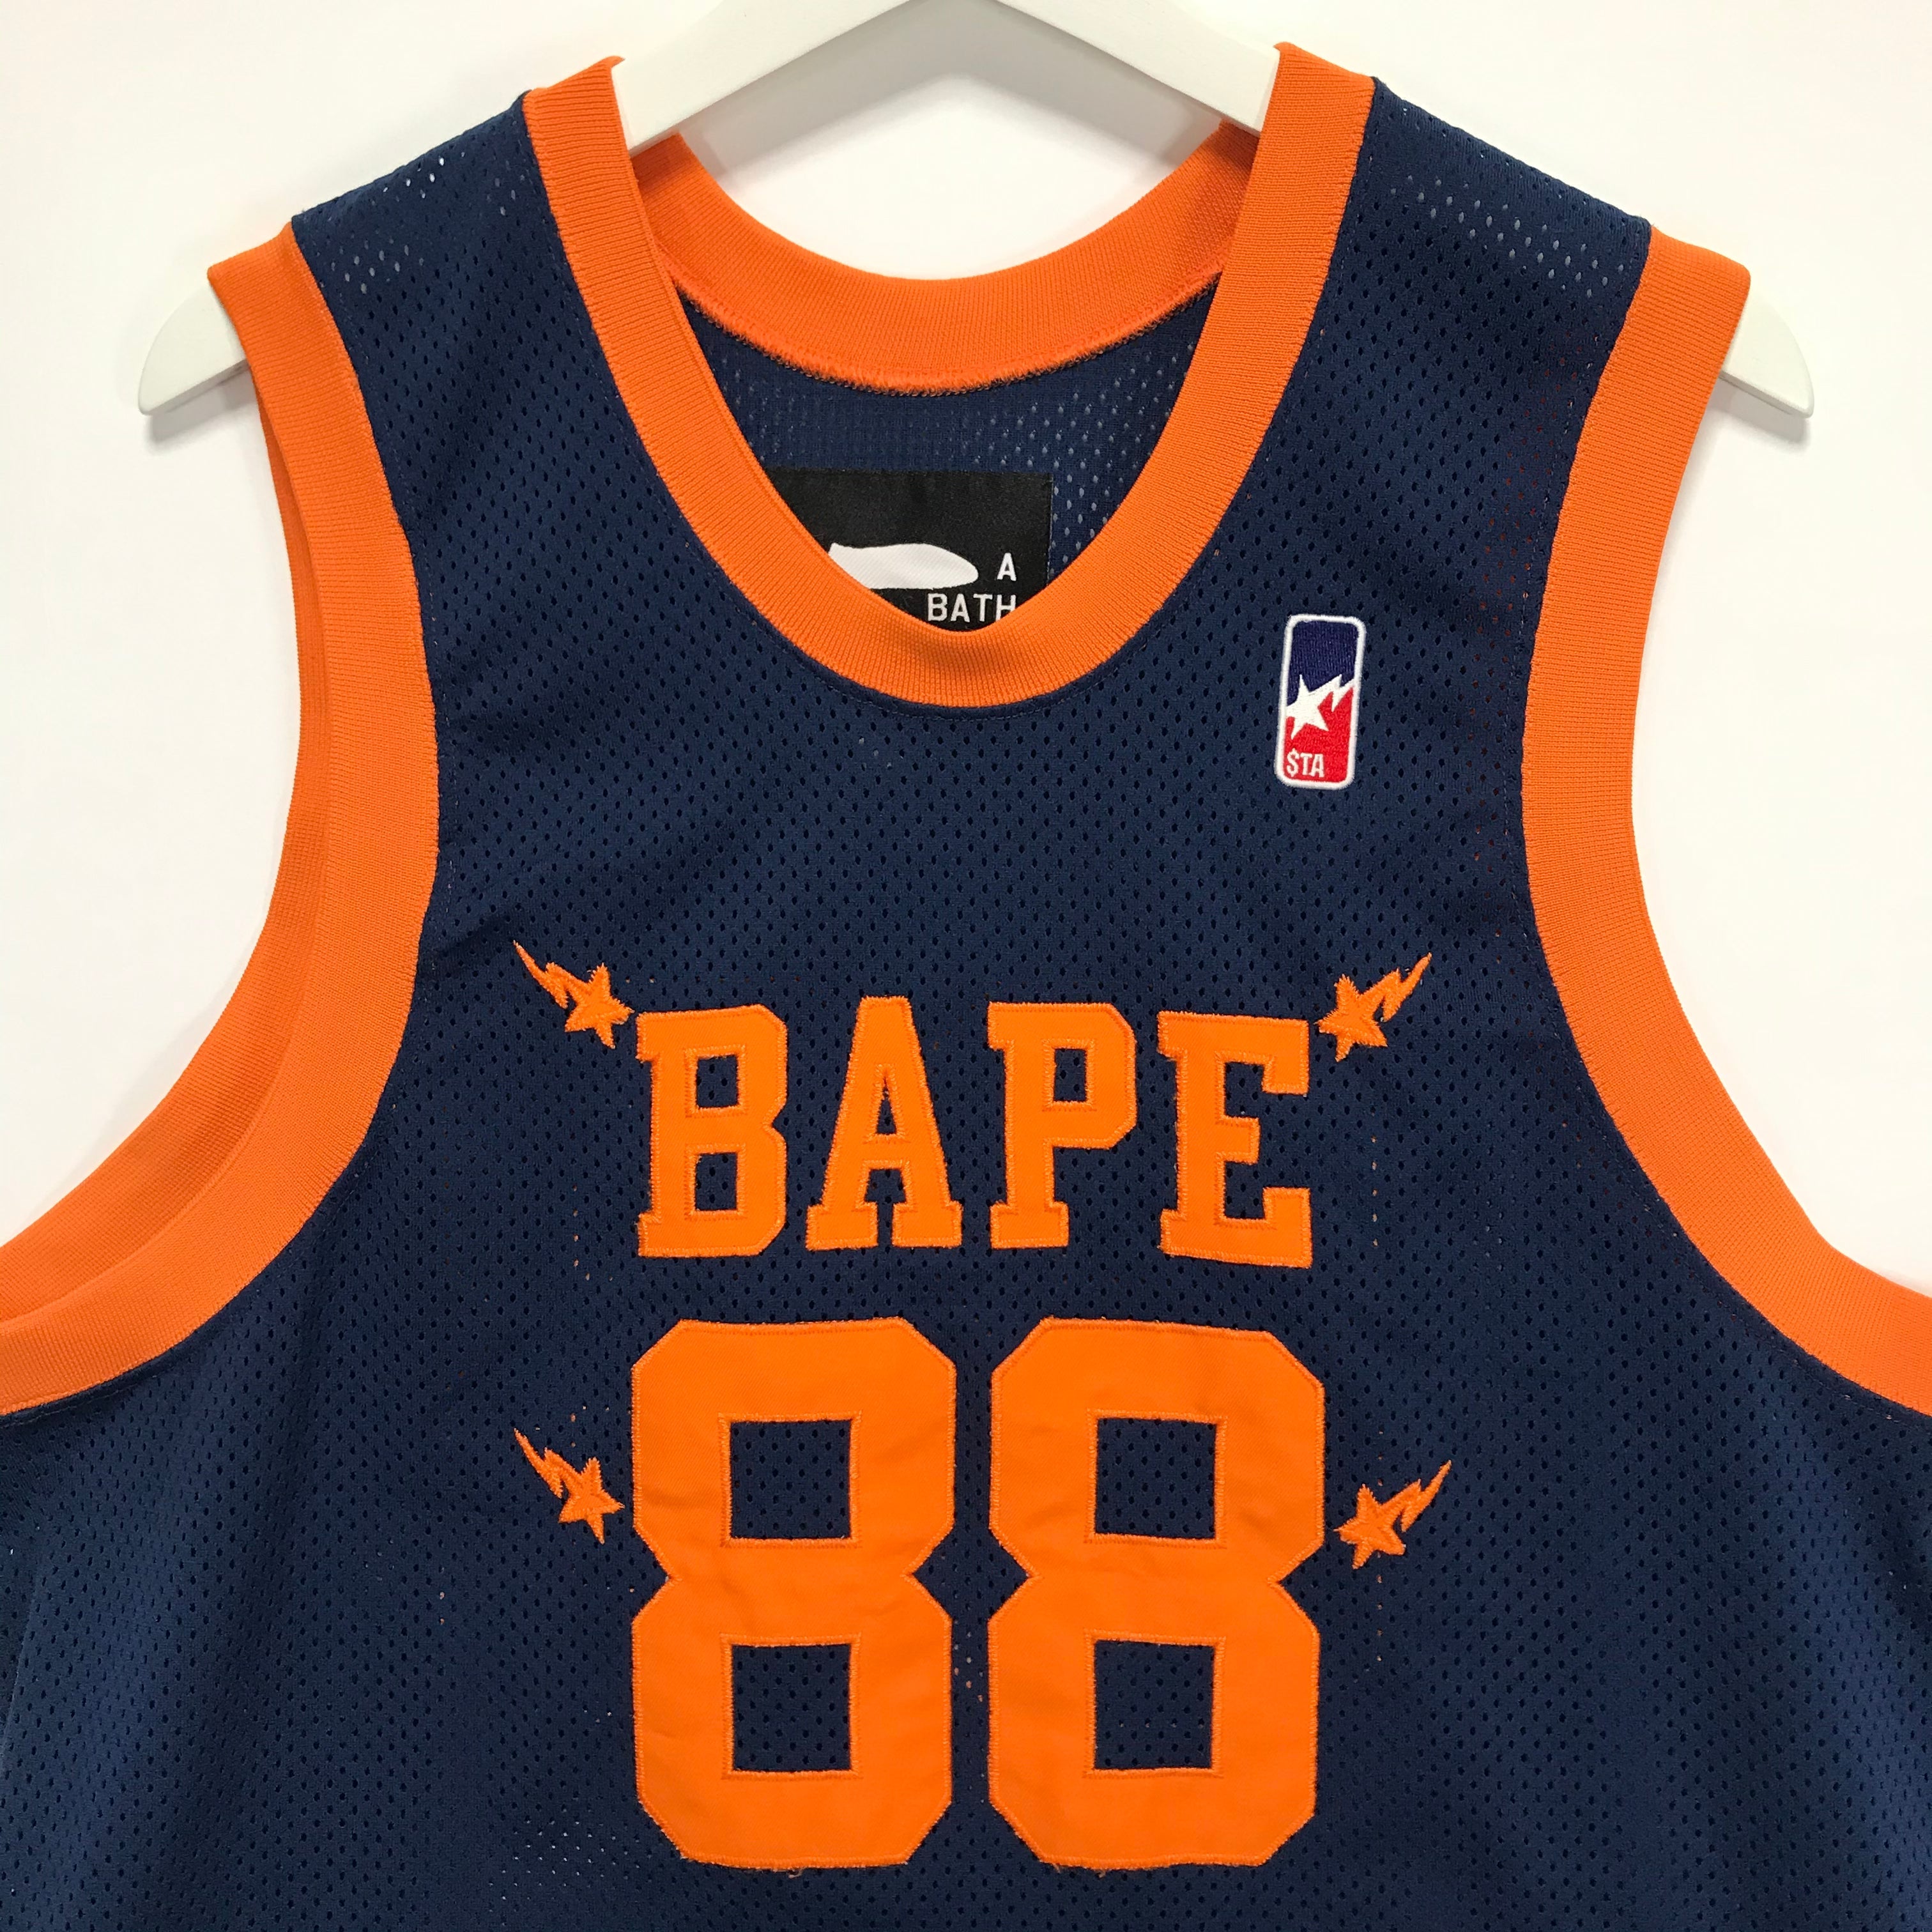 bape basketball jersey design